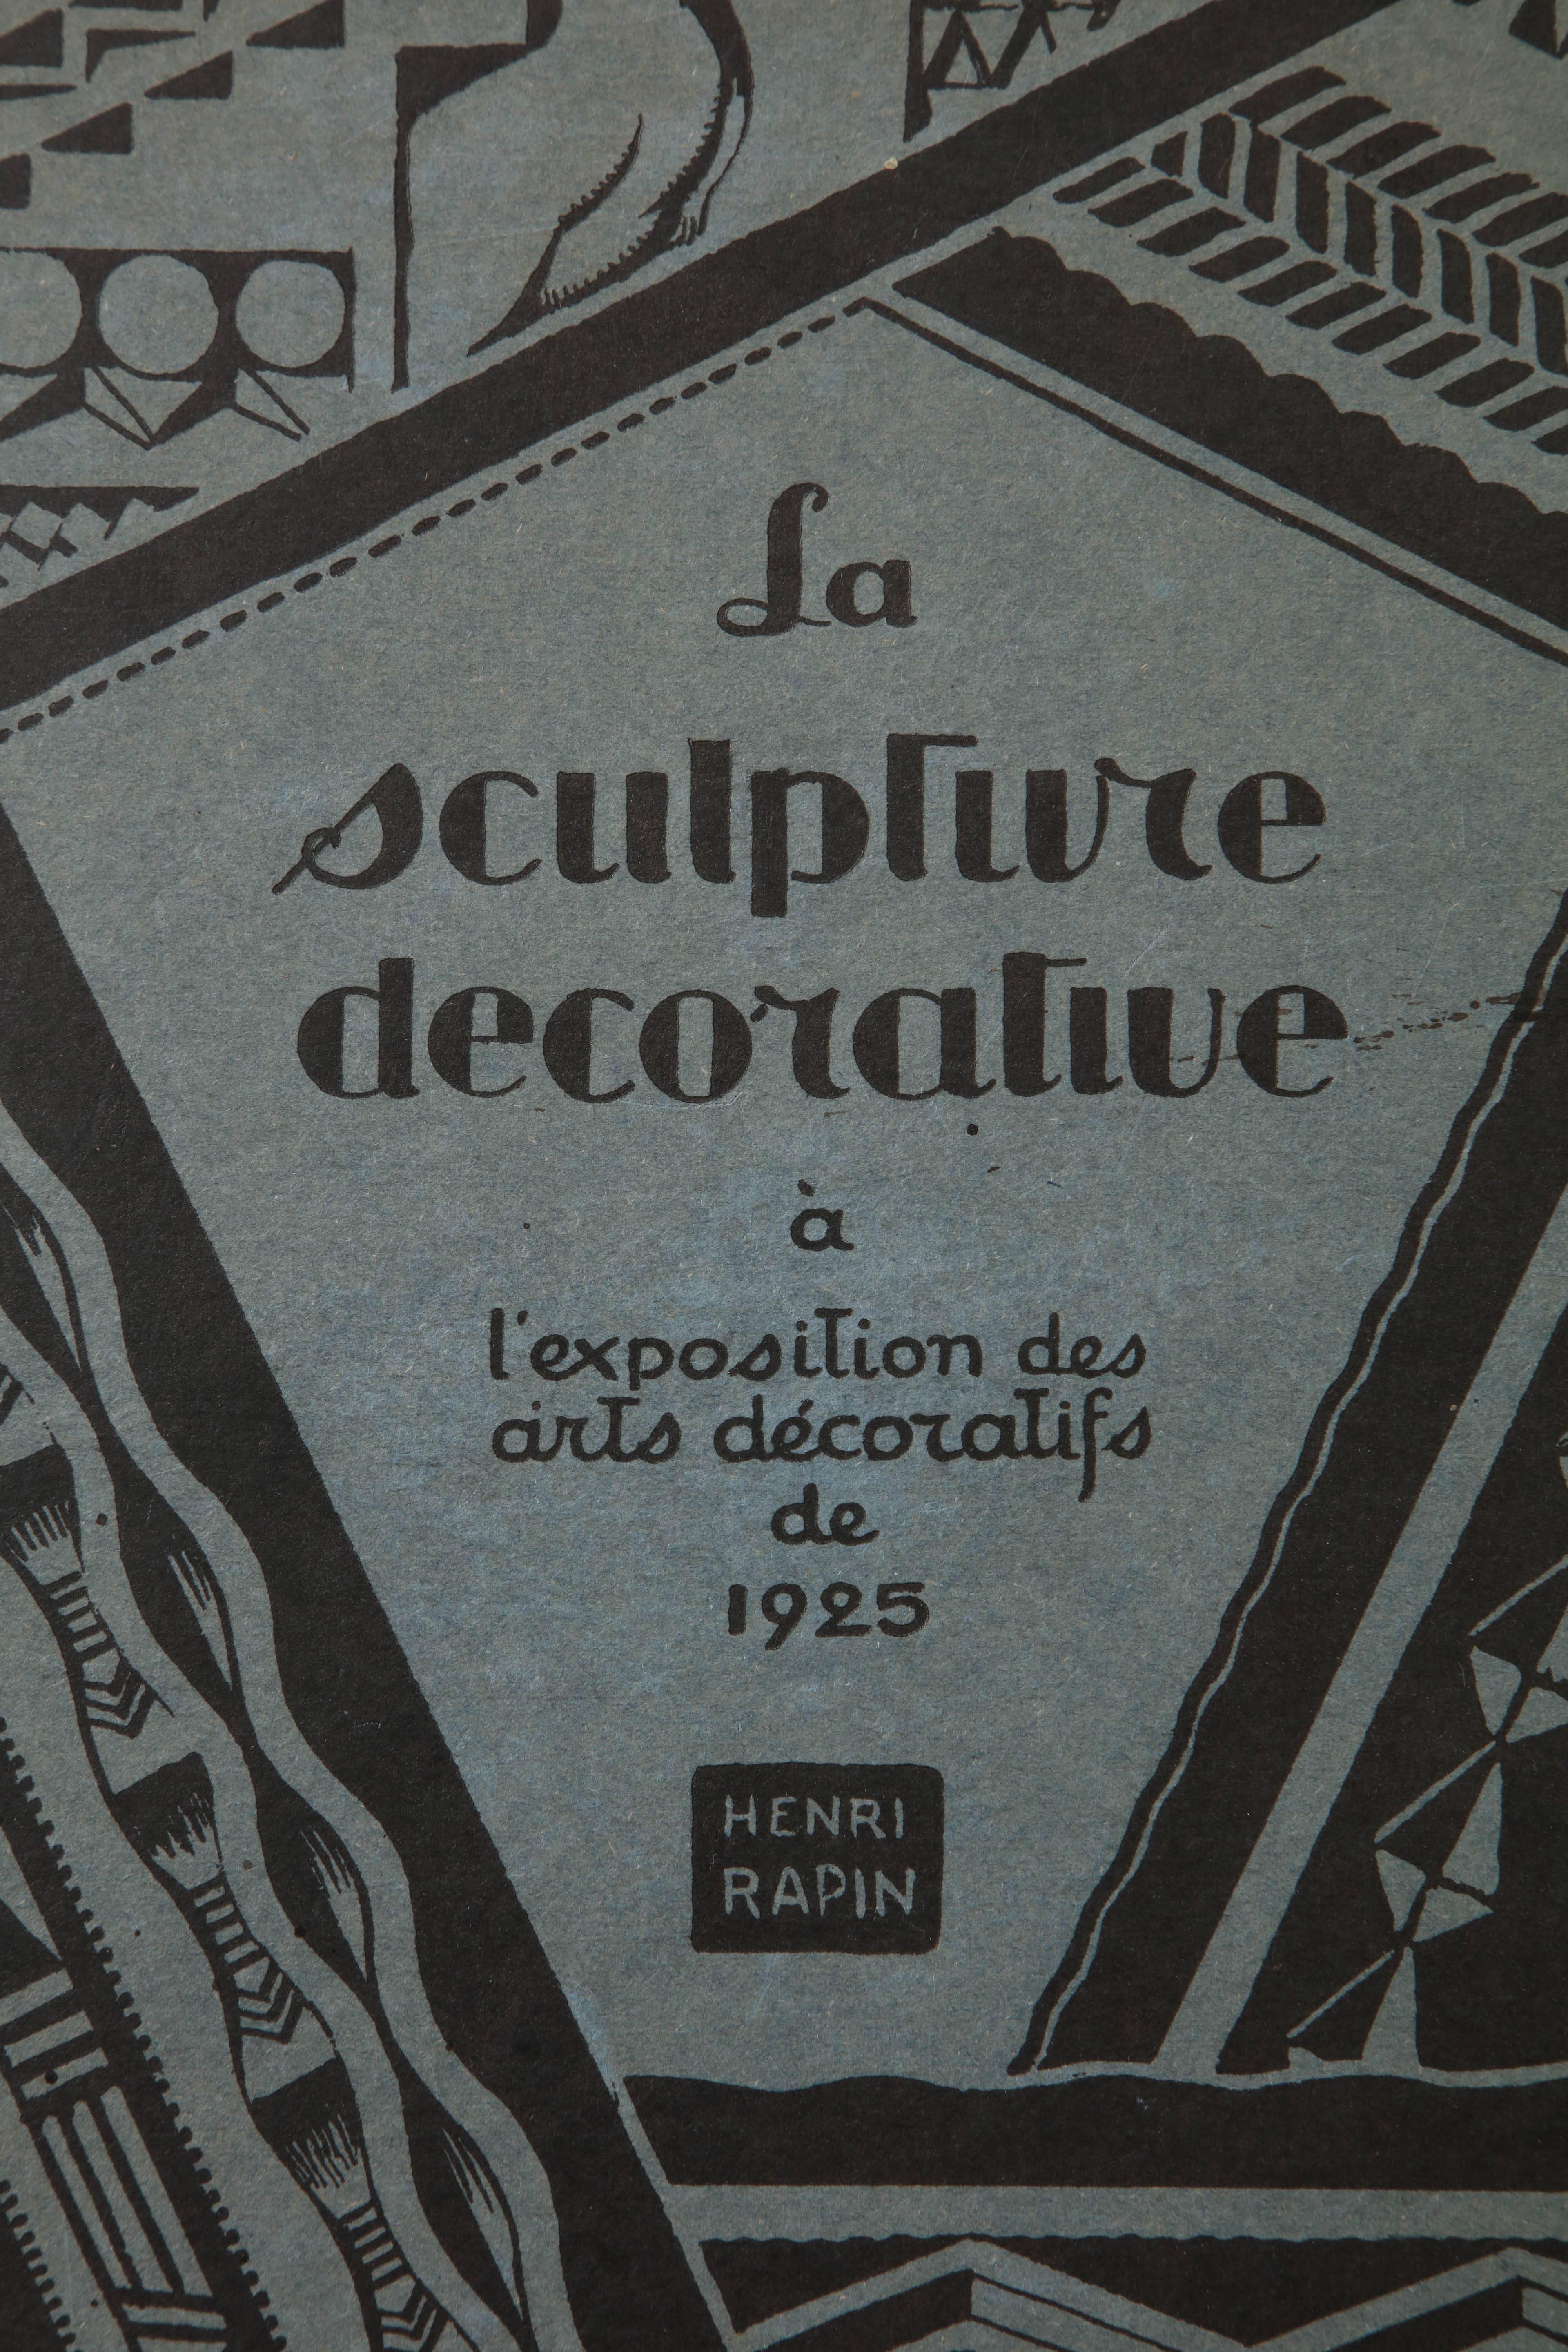 'La Sculpture Decorative Moderne 2eme Serie A L'exposition Des Arts decoratifs De 1925' by Henri Rapin

France, 1925
Published by editions D'Art Charles Moreau, Paris, 1925
32 Plates (complete) 11 15/16'' wide by 16 1/4'' high
Includes many